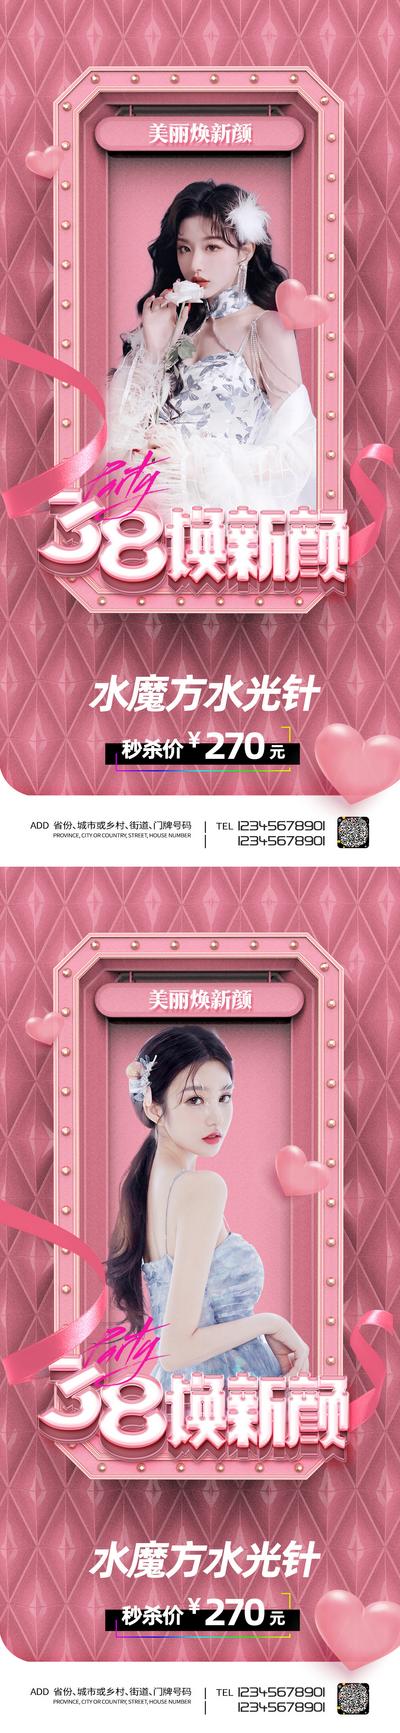 【南门网】广告 海报 医美 38 女神节 妇女节 活动 促销 水光针 秒杀